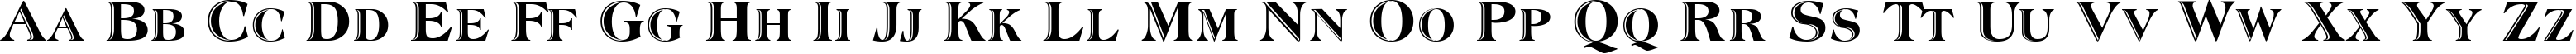 Пример написания английского алфавита шрифтом Atlantic Inline-Normal